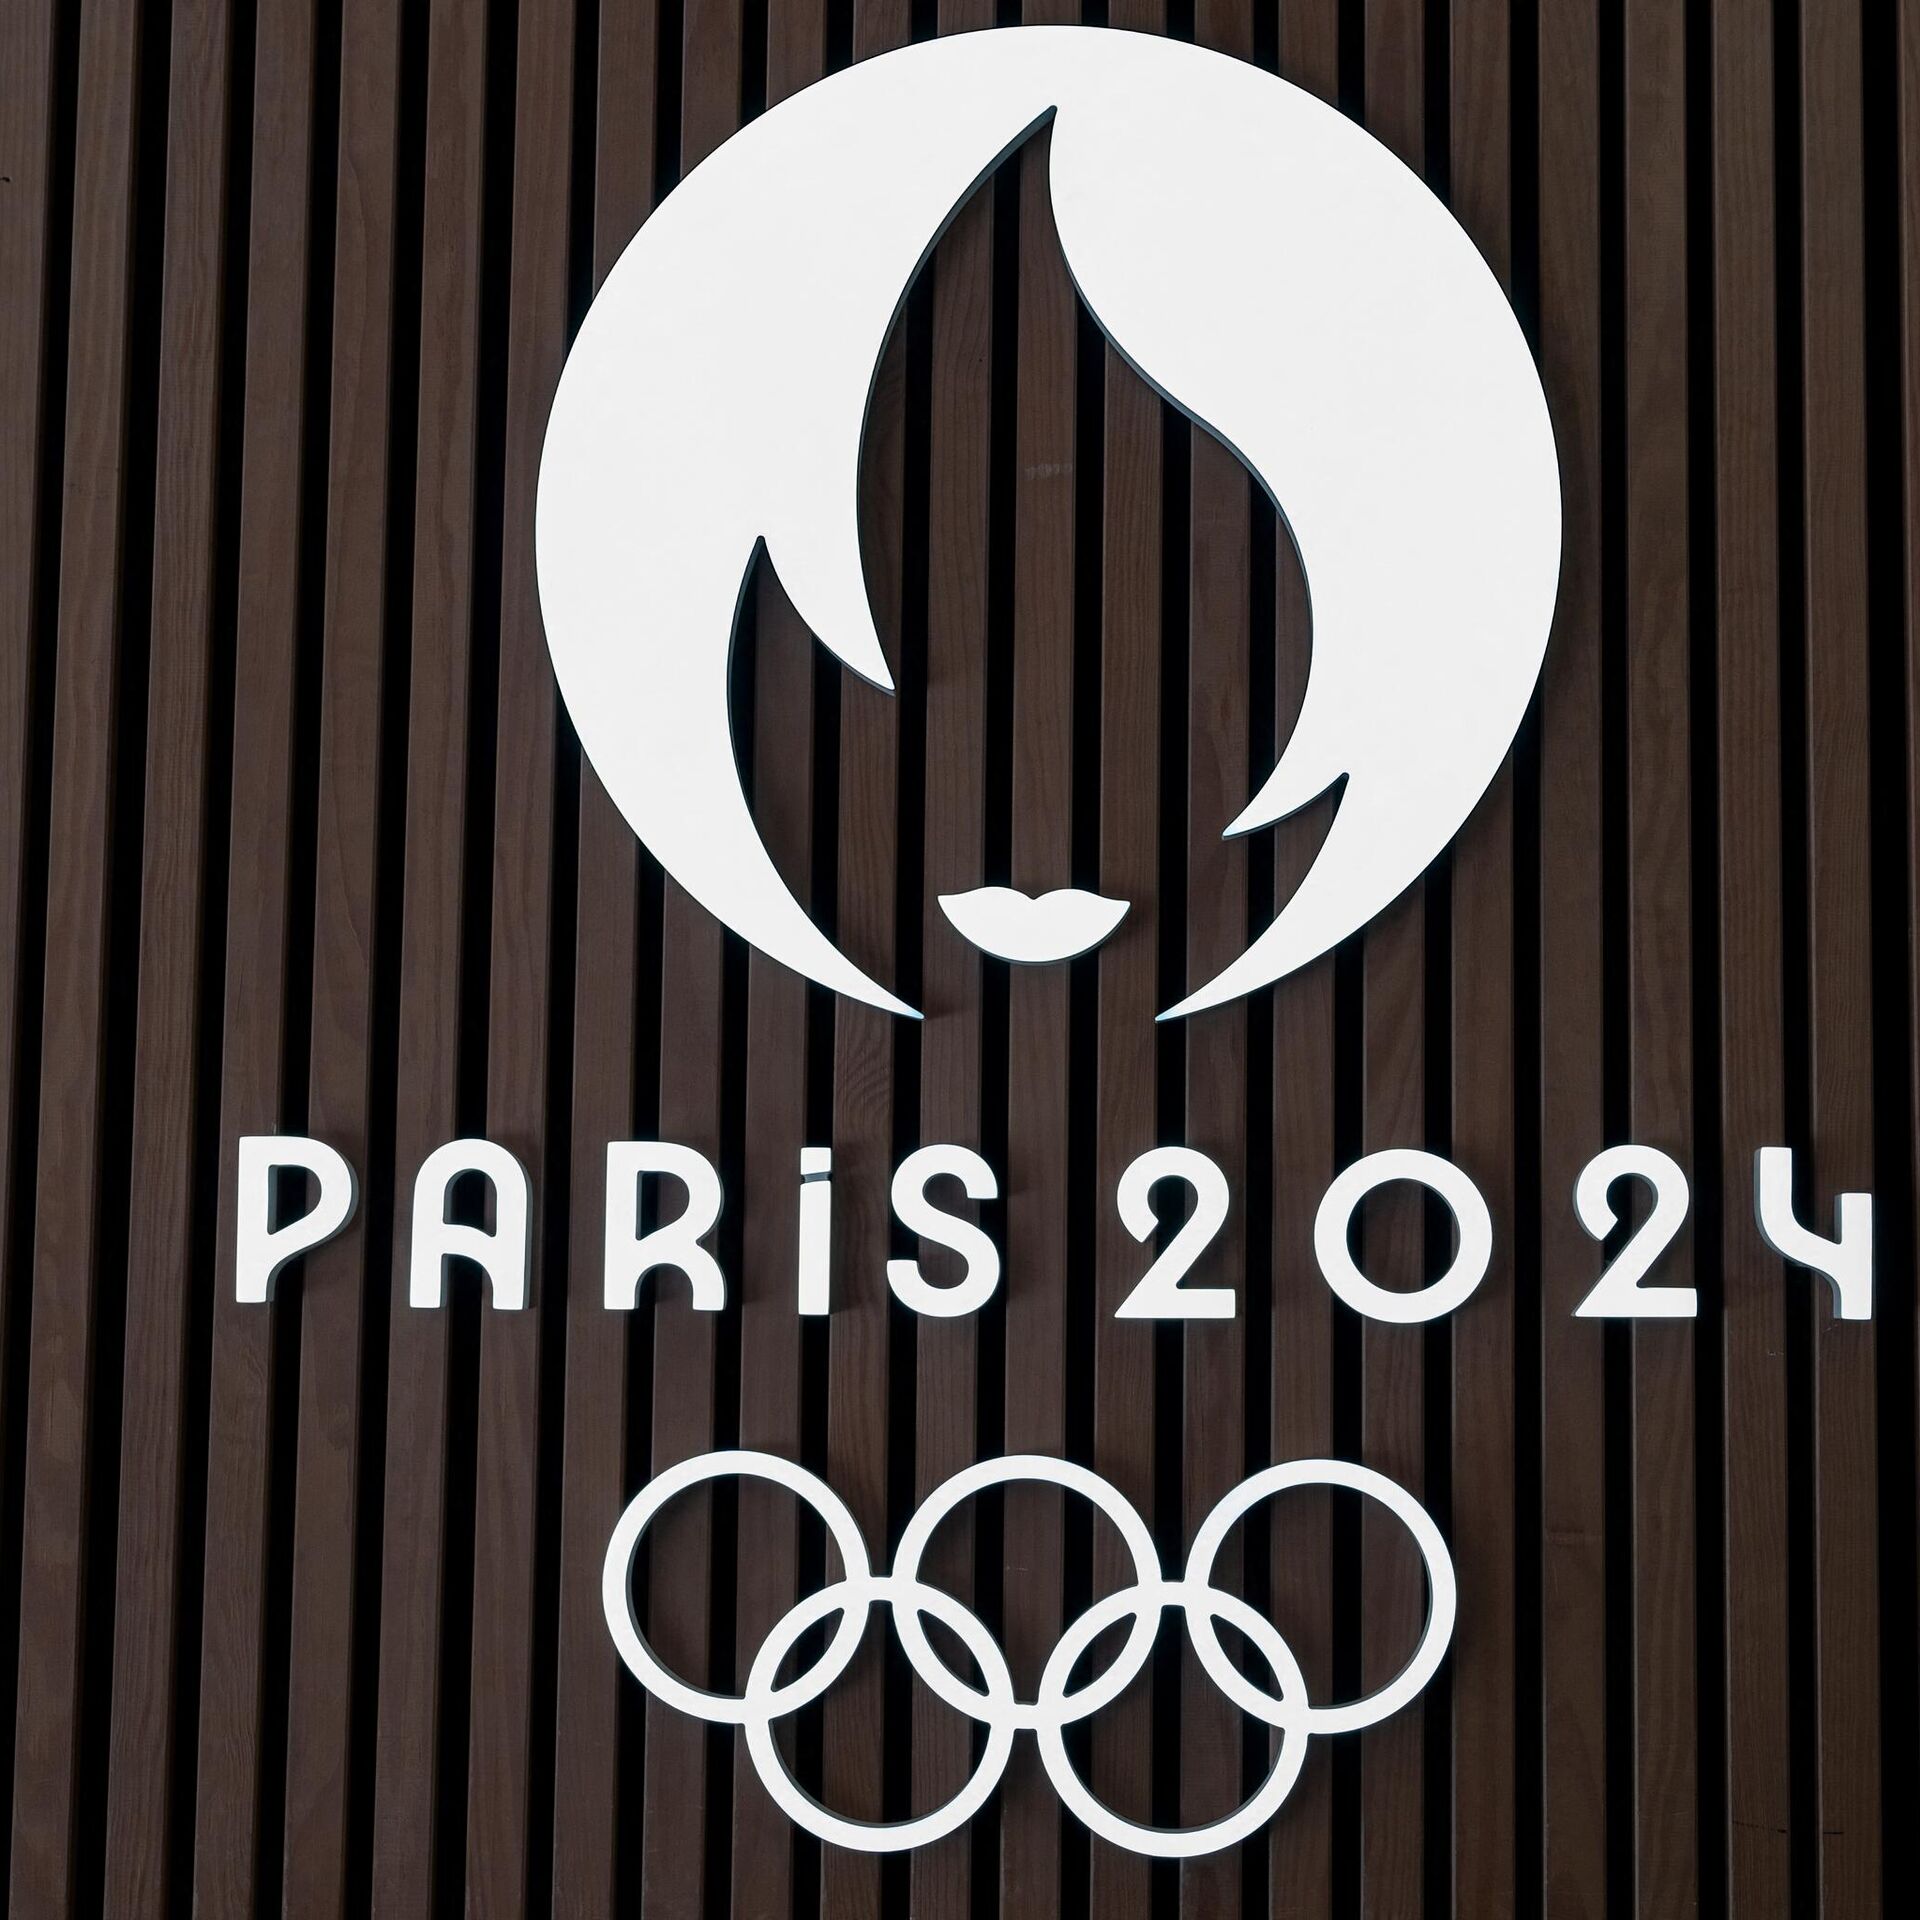 Paris se prepara para receber os Jogos Olímpicos de 2024